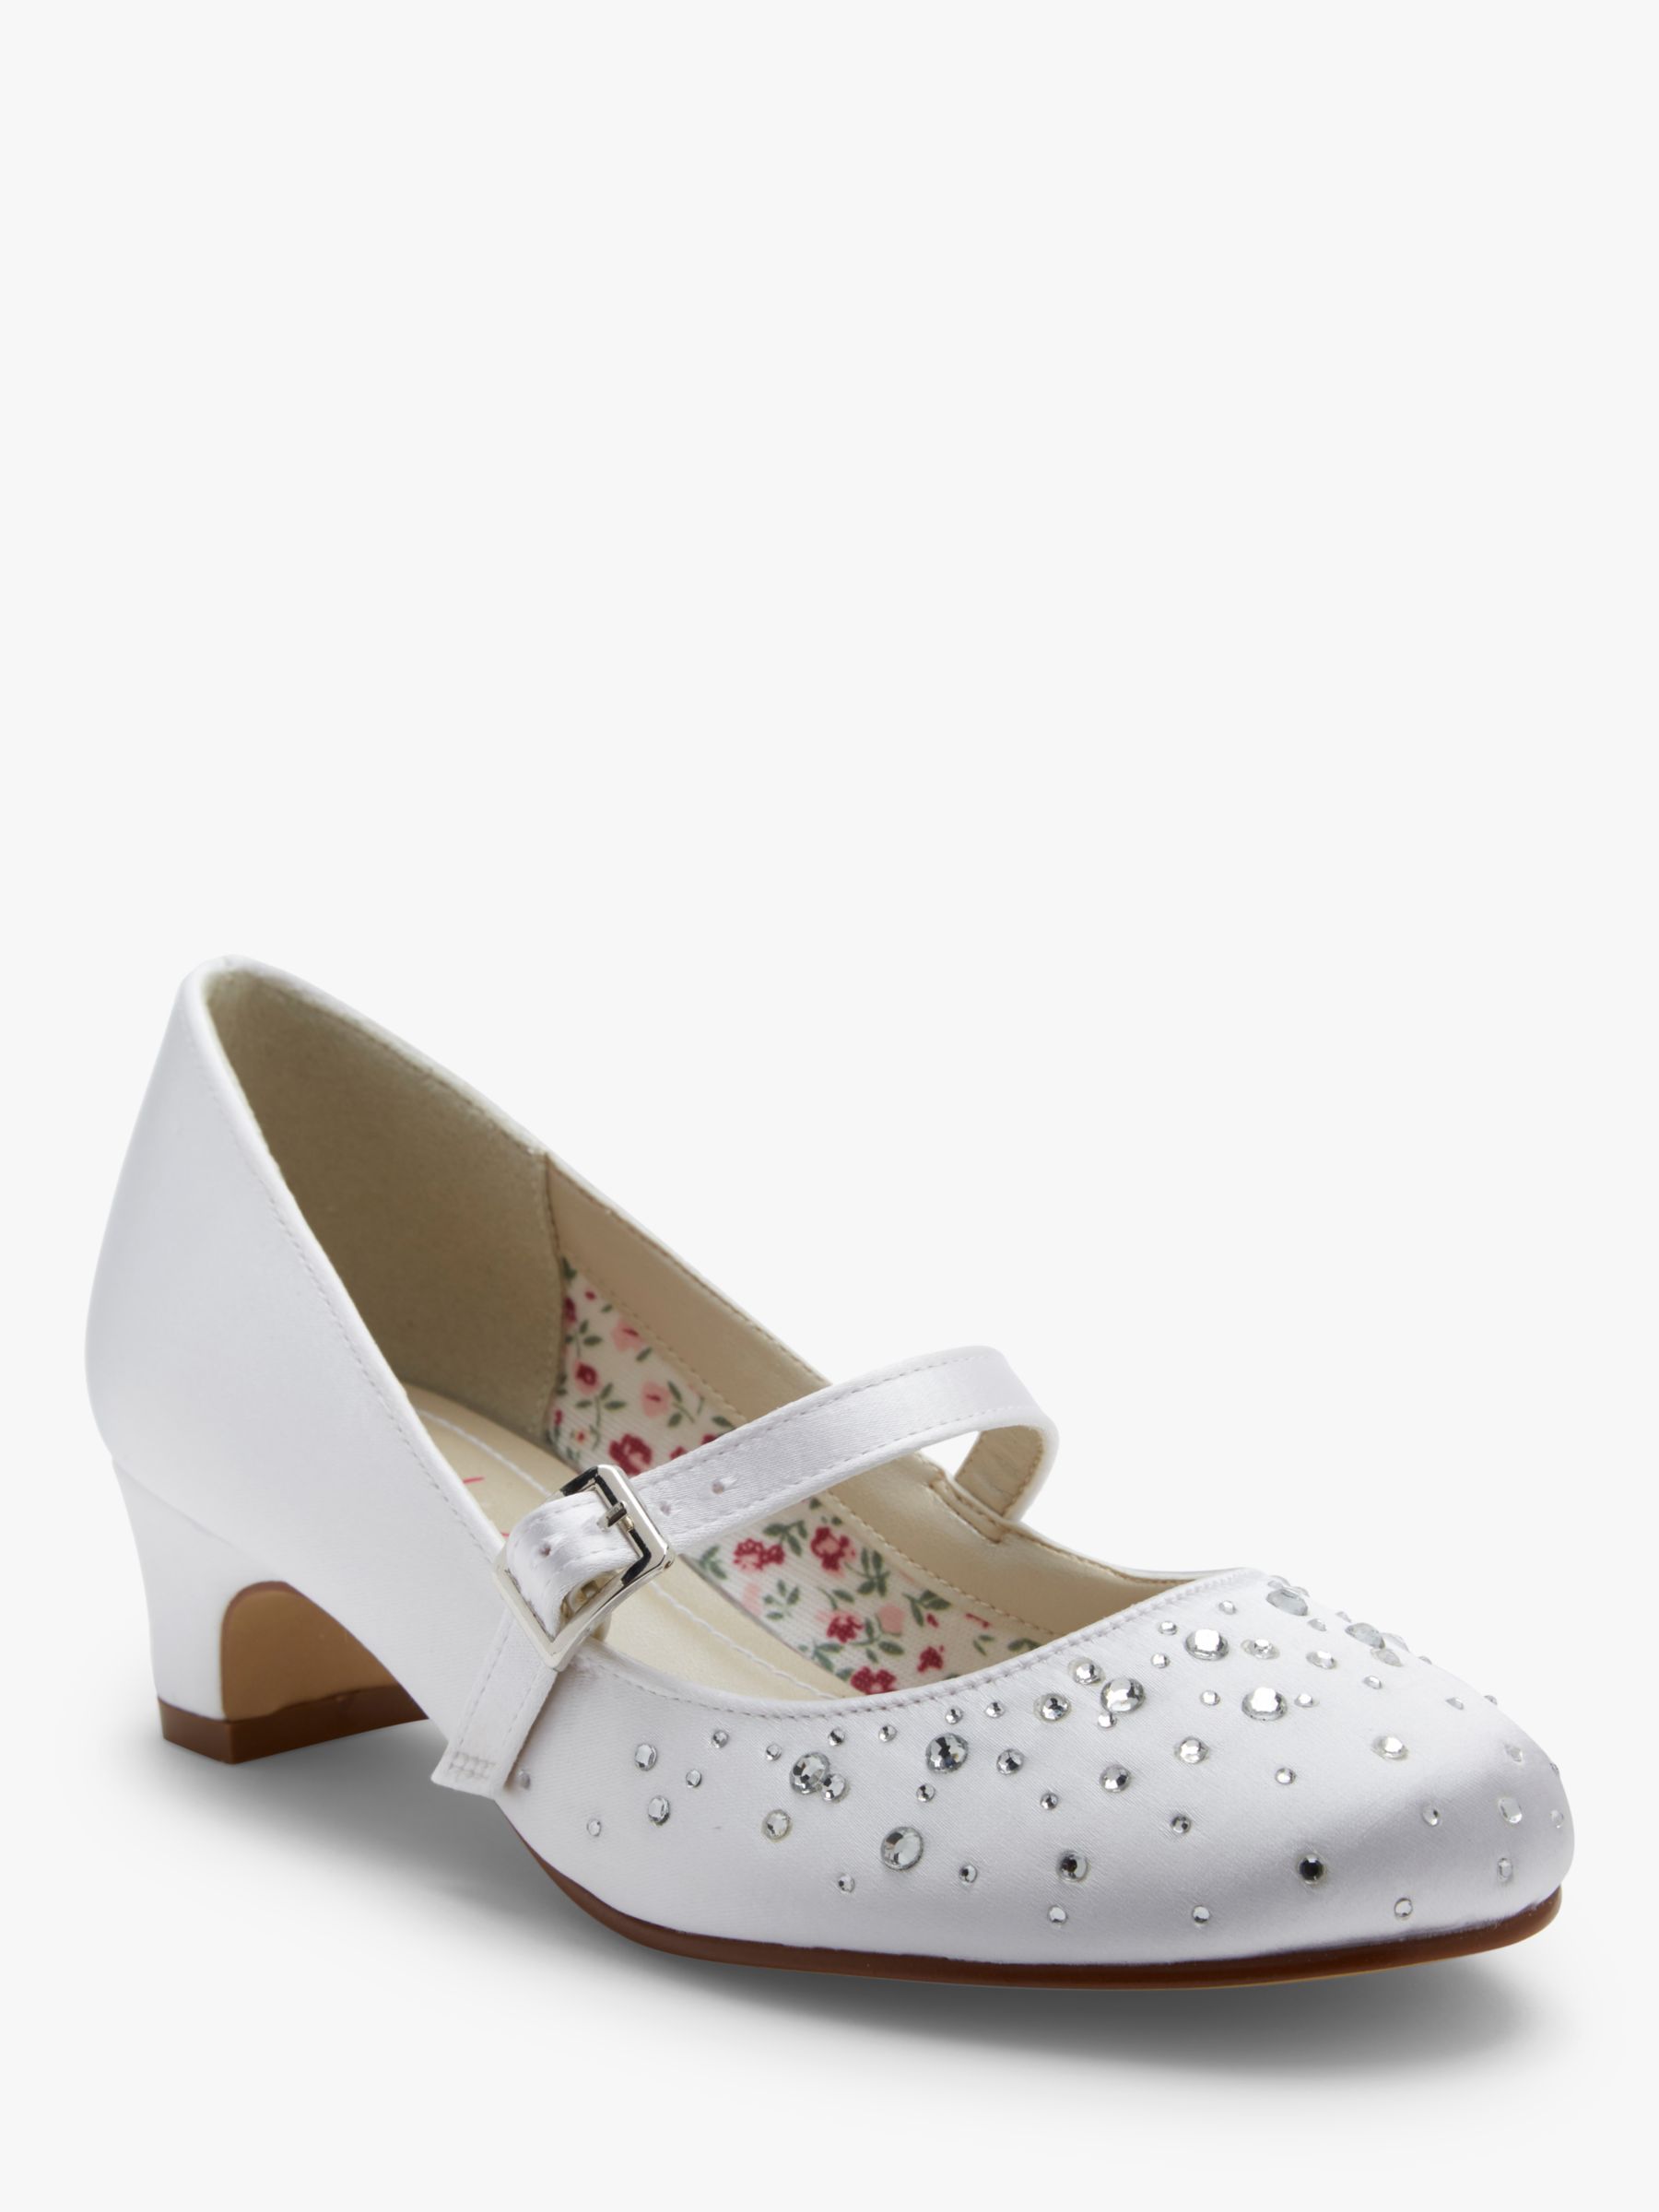 Rainbow Club Cherry Bridesmaid Shoes, White Communion, 10 Jnr